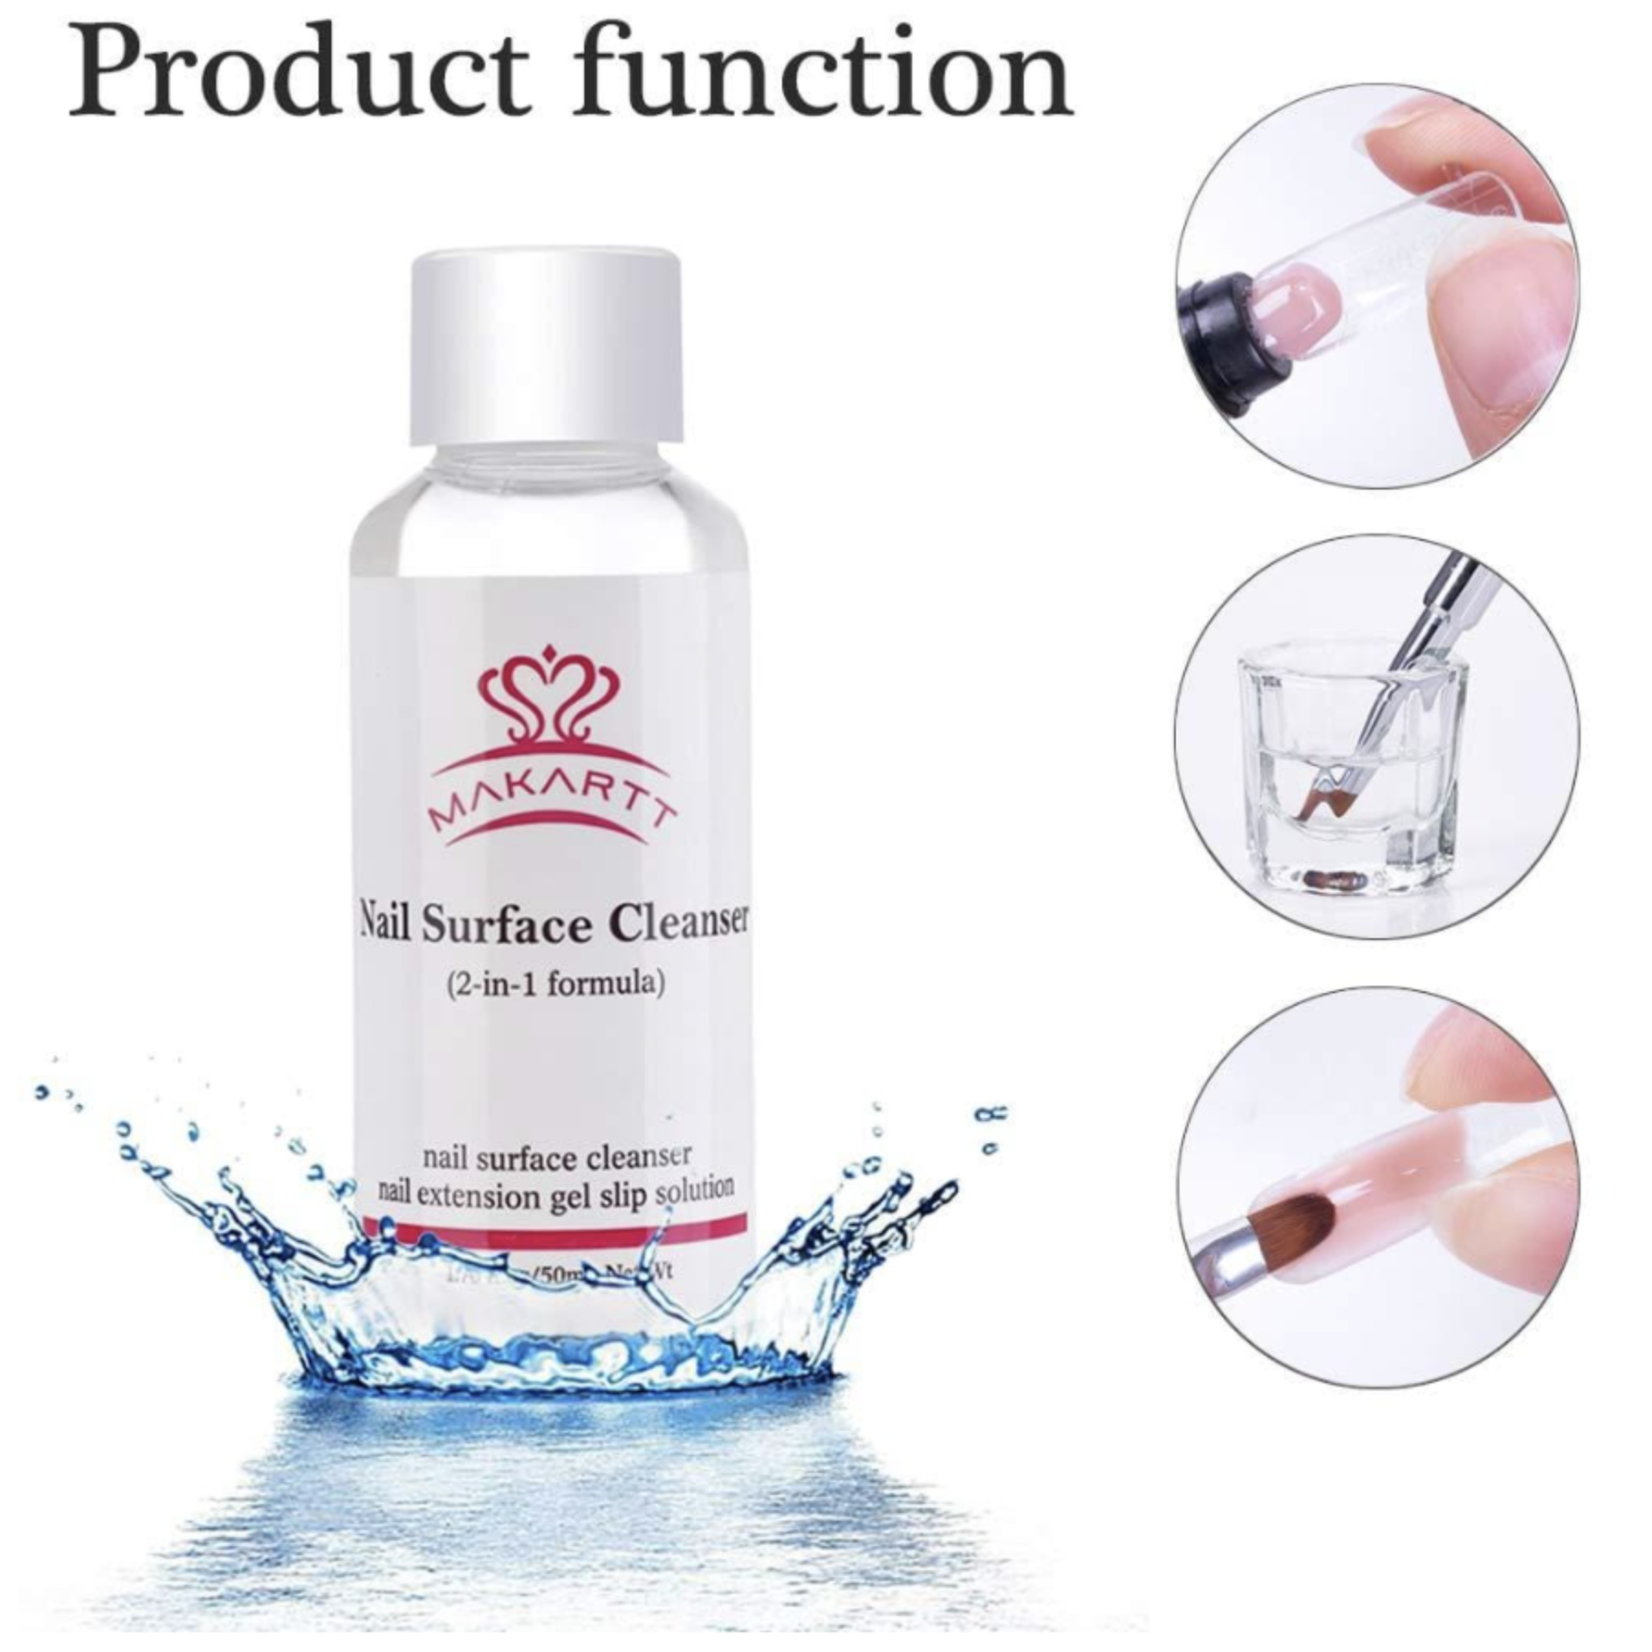 Makartt Makartt - Slip Solution Nail Cleanser Liquid Kit